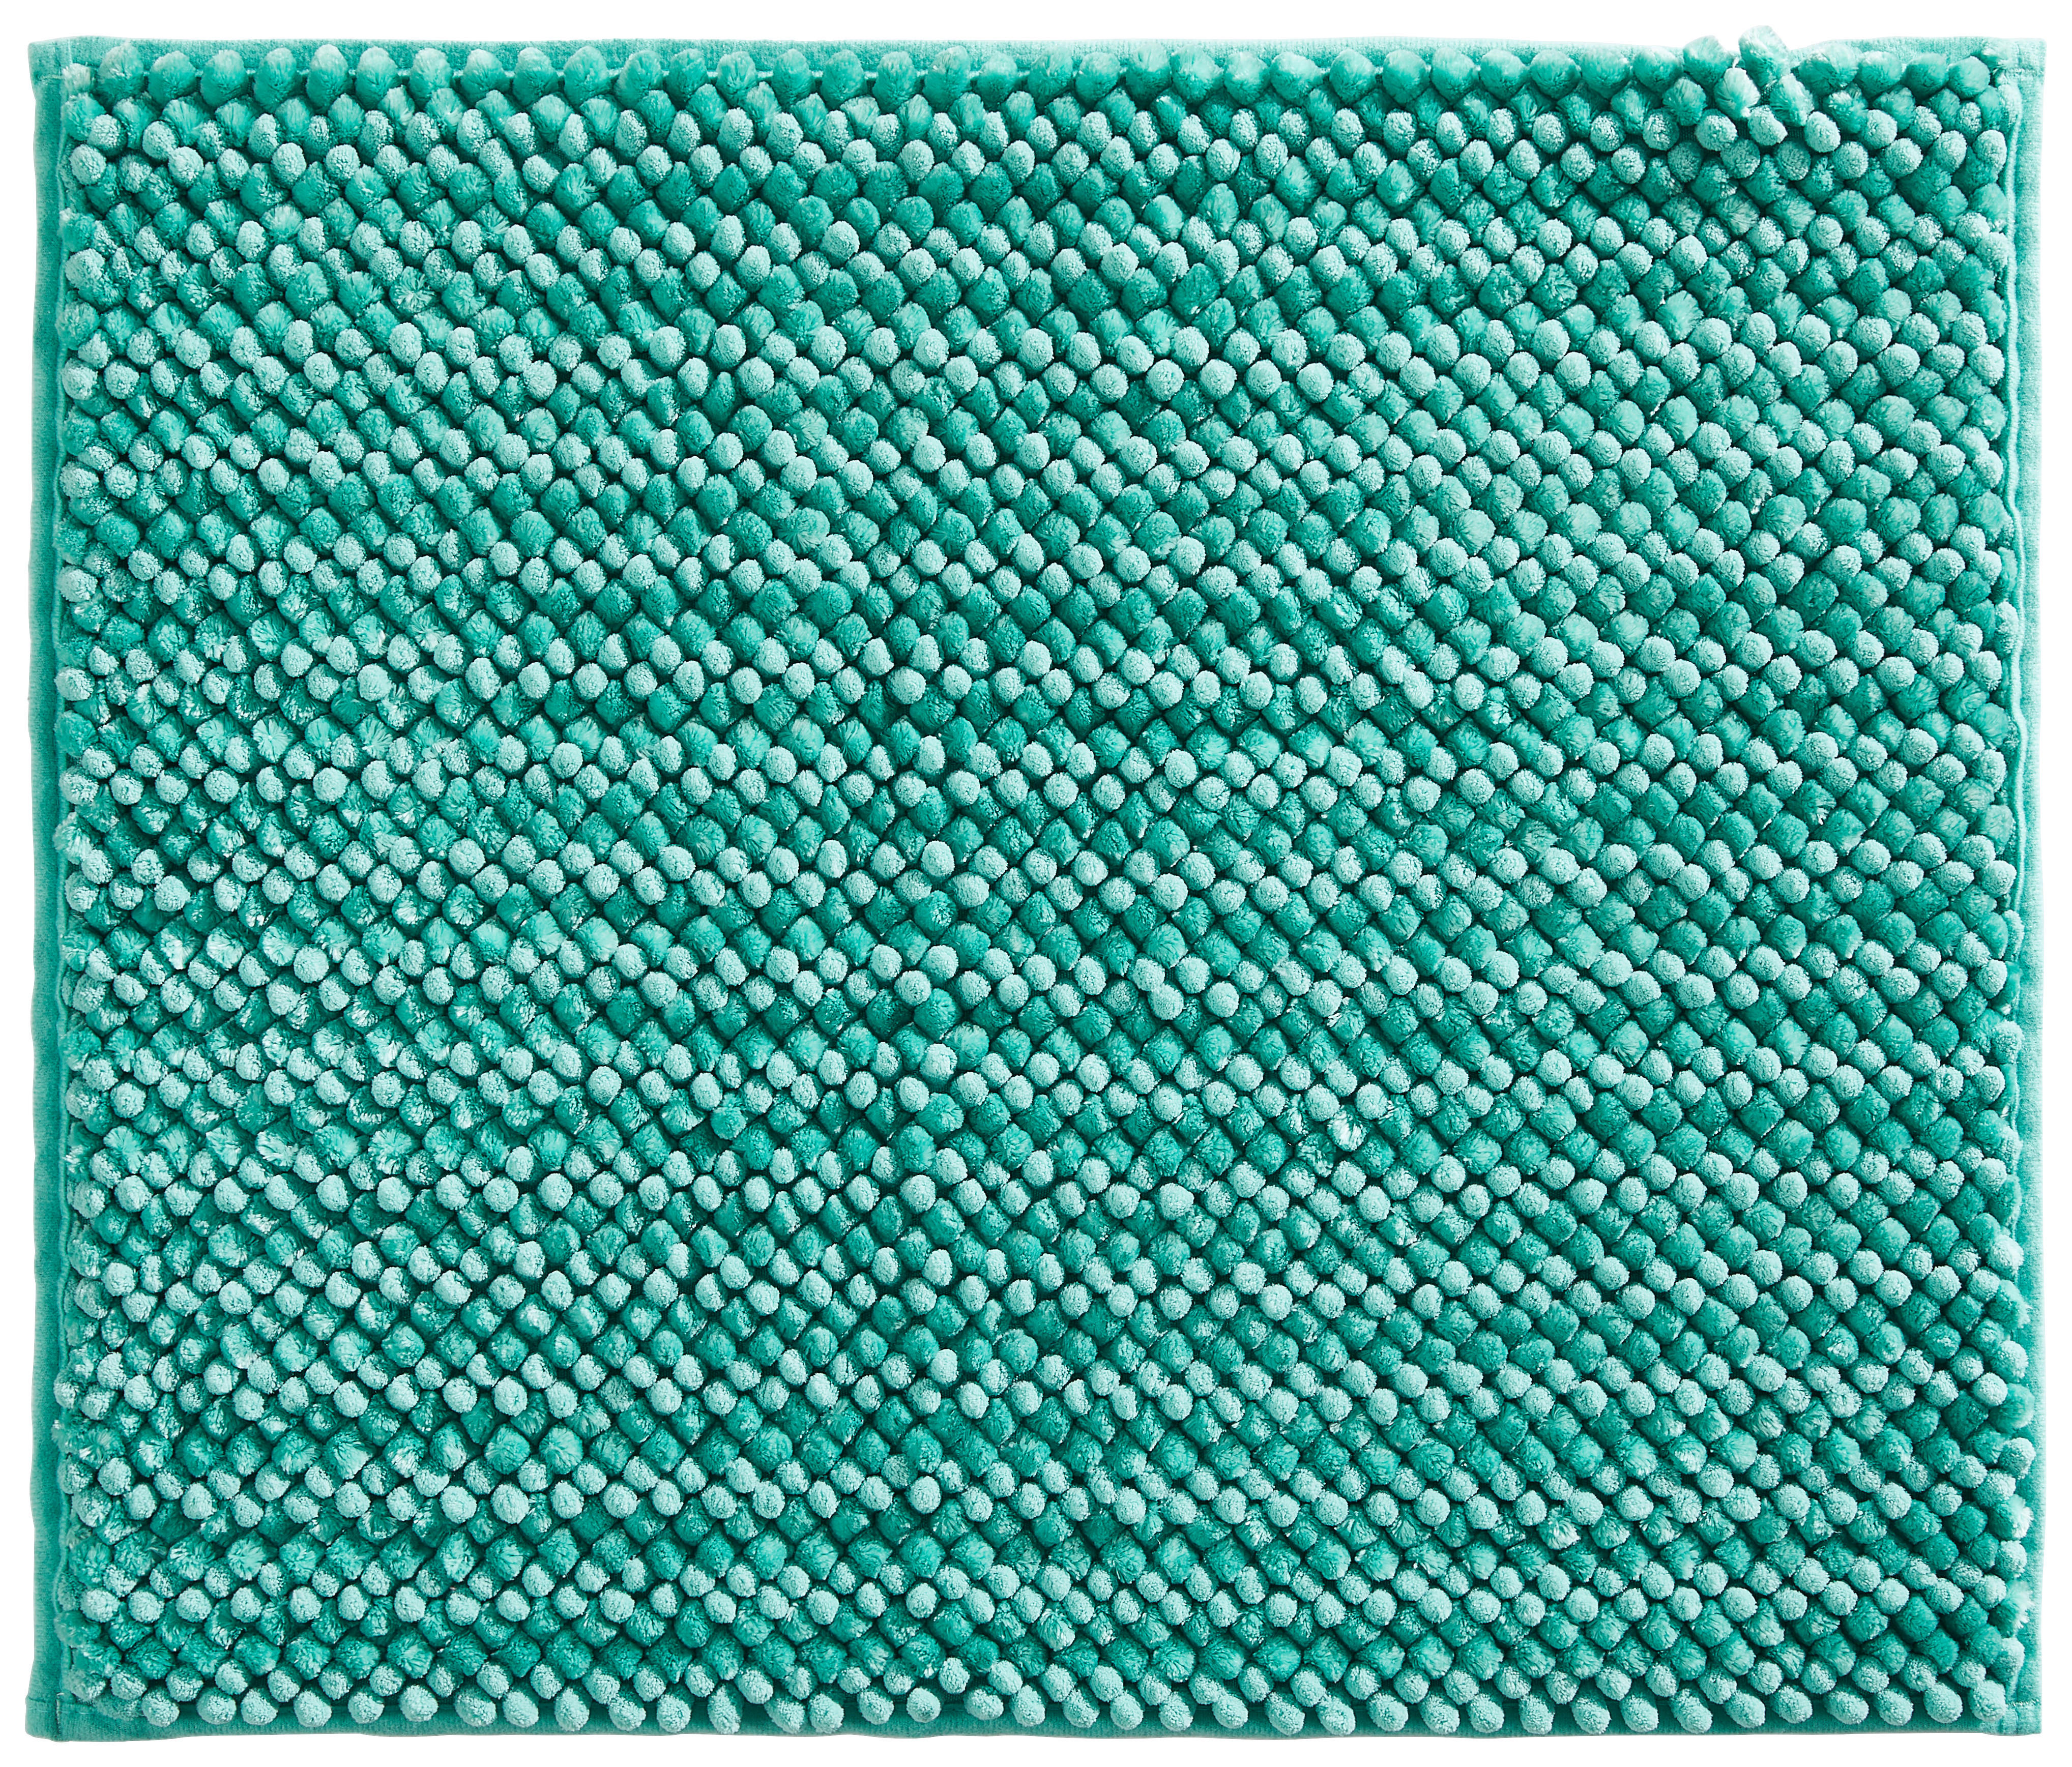 BADEMATTE Soft 60/50 cm  - Türkis, Trend, Kunststoff/Textil (60/50cm) - Esposa